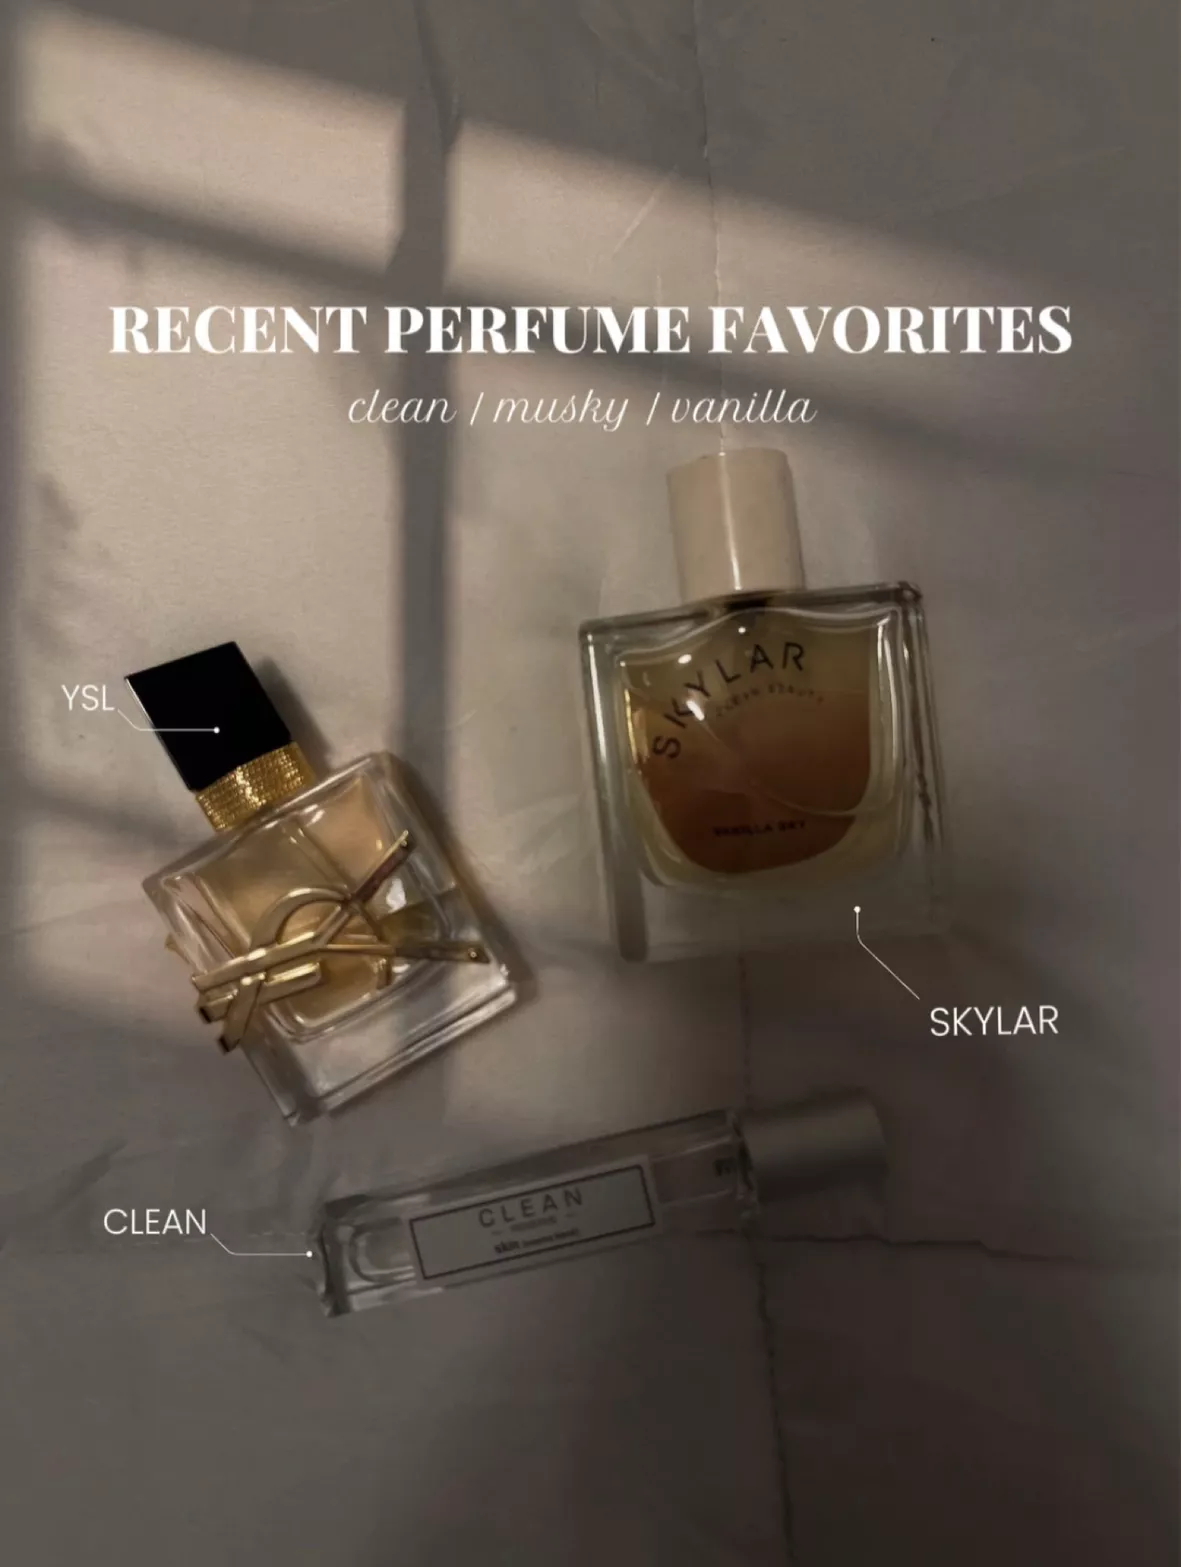 Y Eau de Parfum curated on LTK